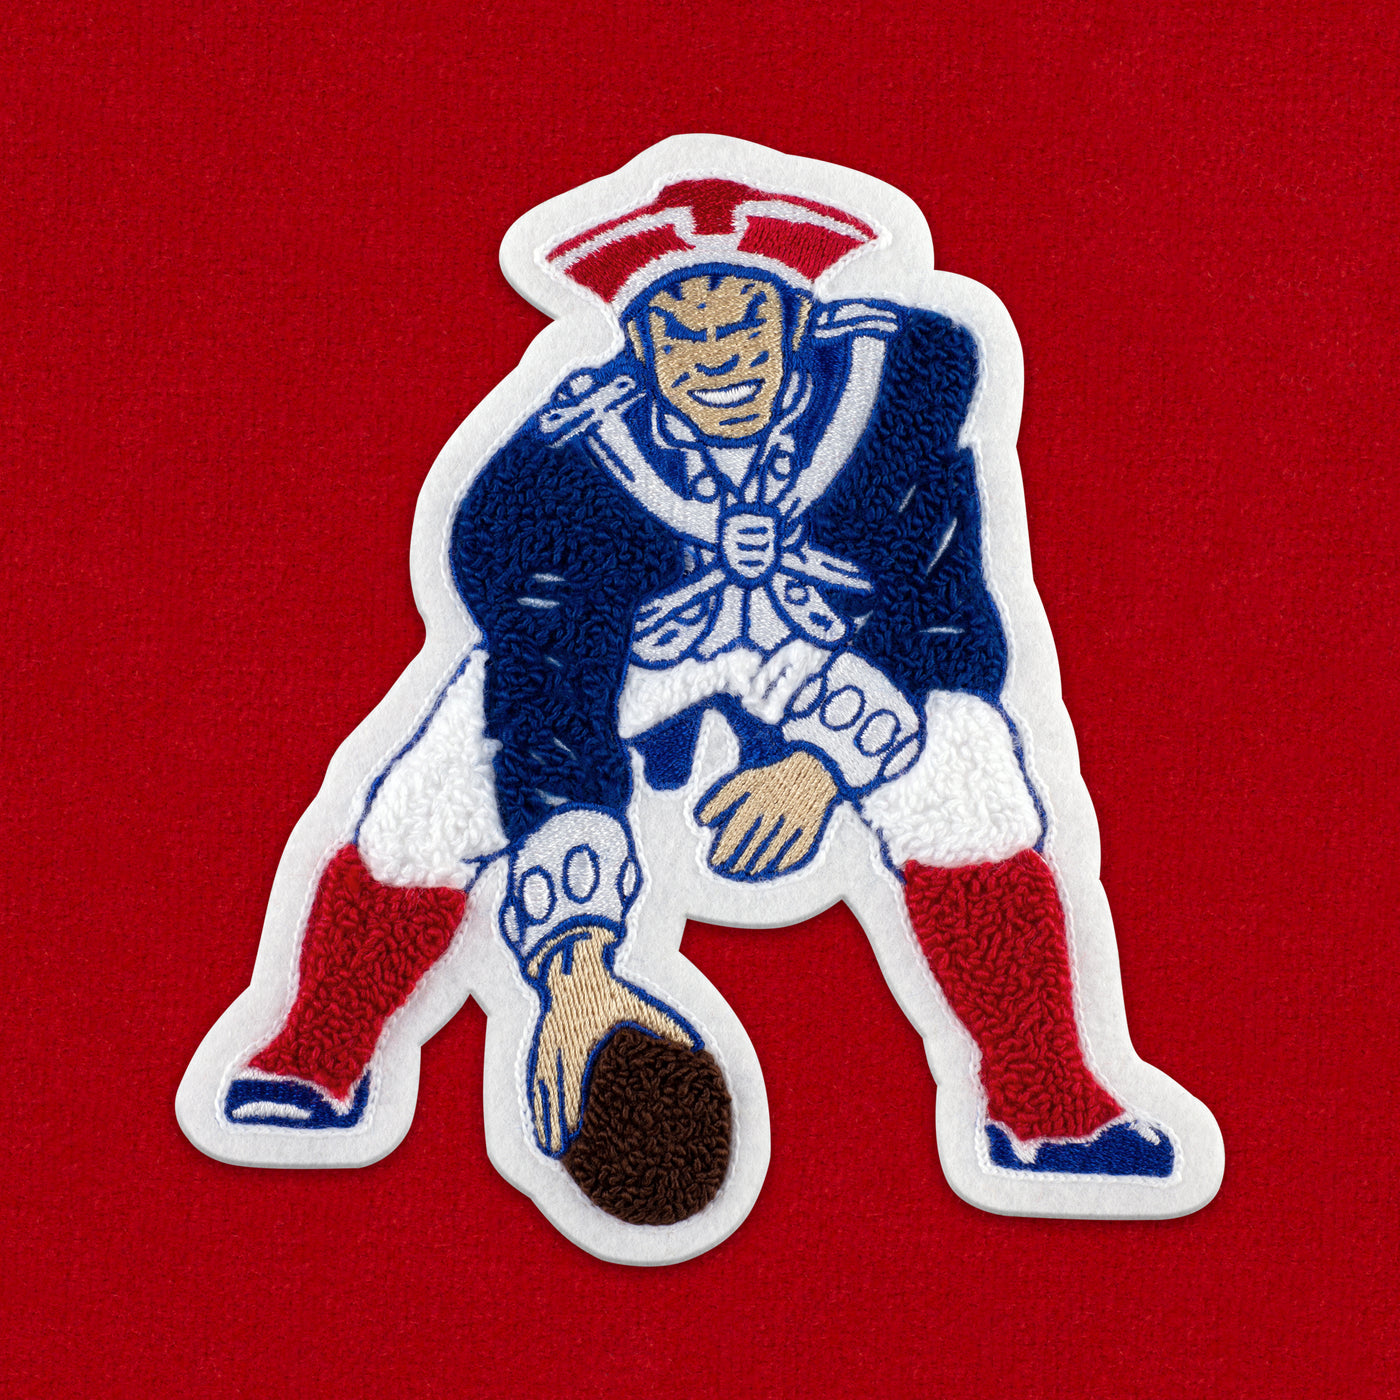 Patriots bring back red jerseys, 'Pat Patriot' logo for Week 5 vs